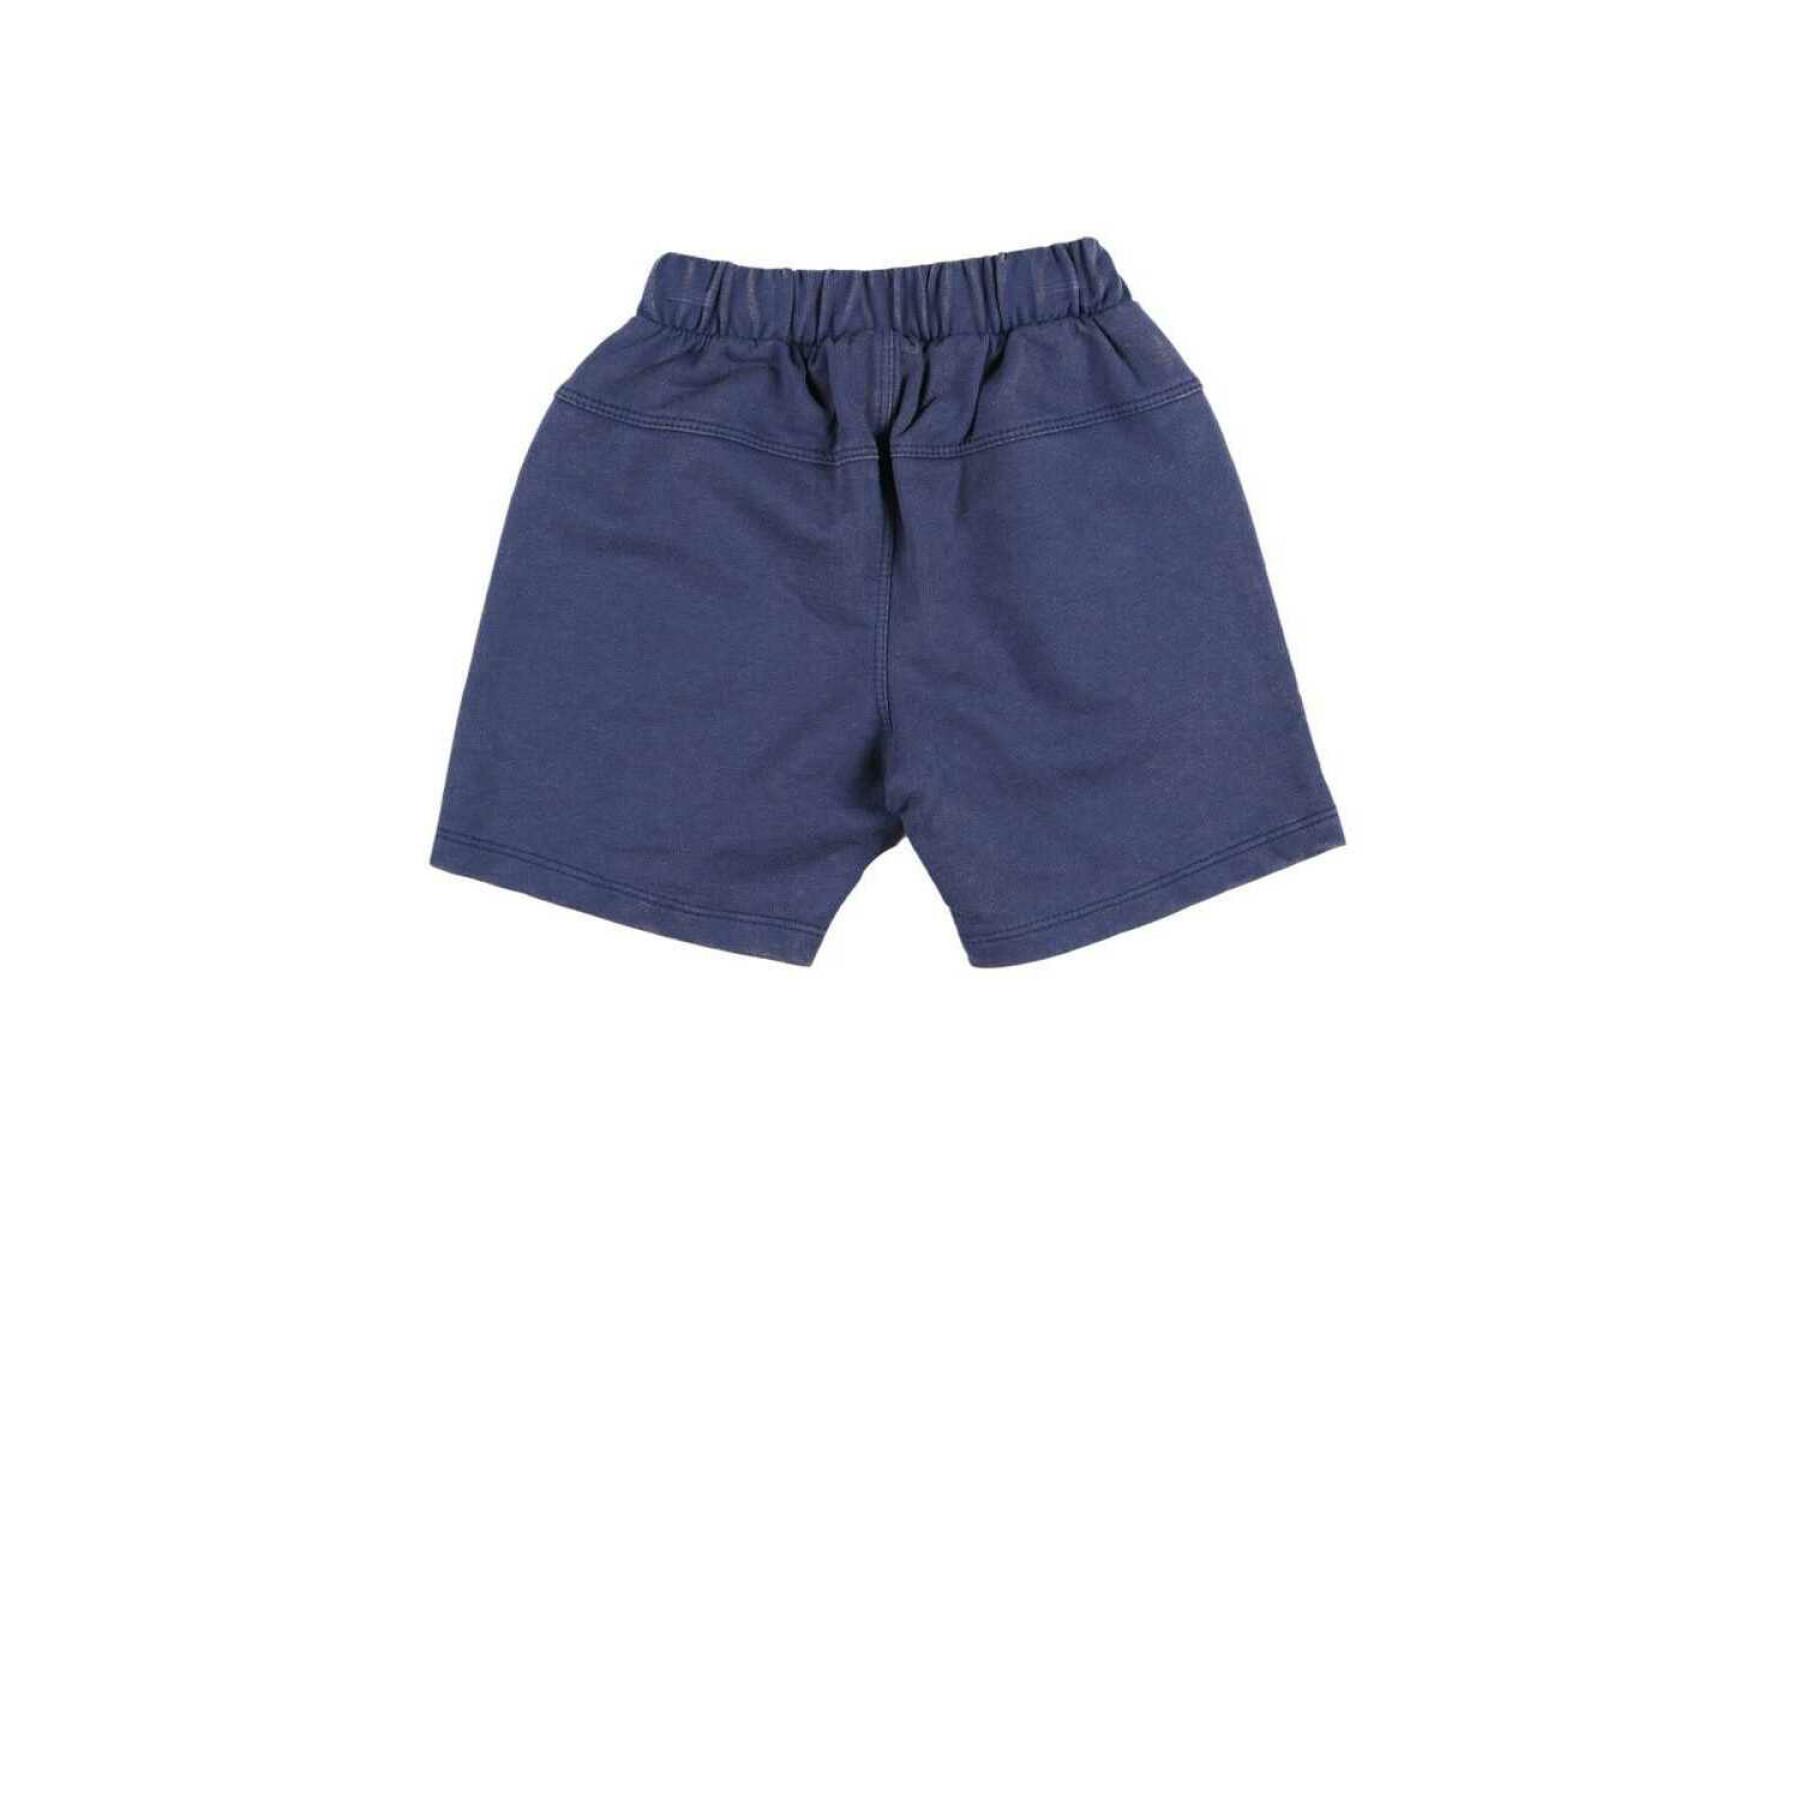 Baby shorts Charanga Grarifornia